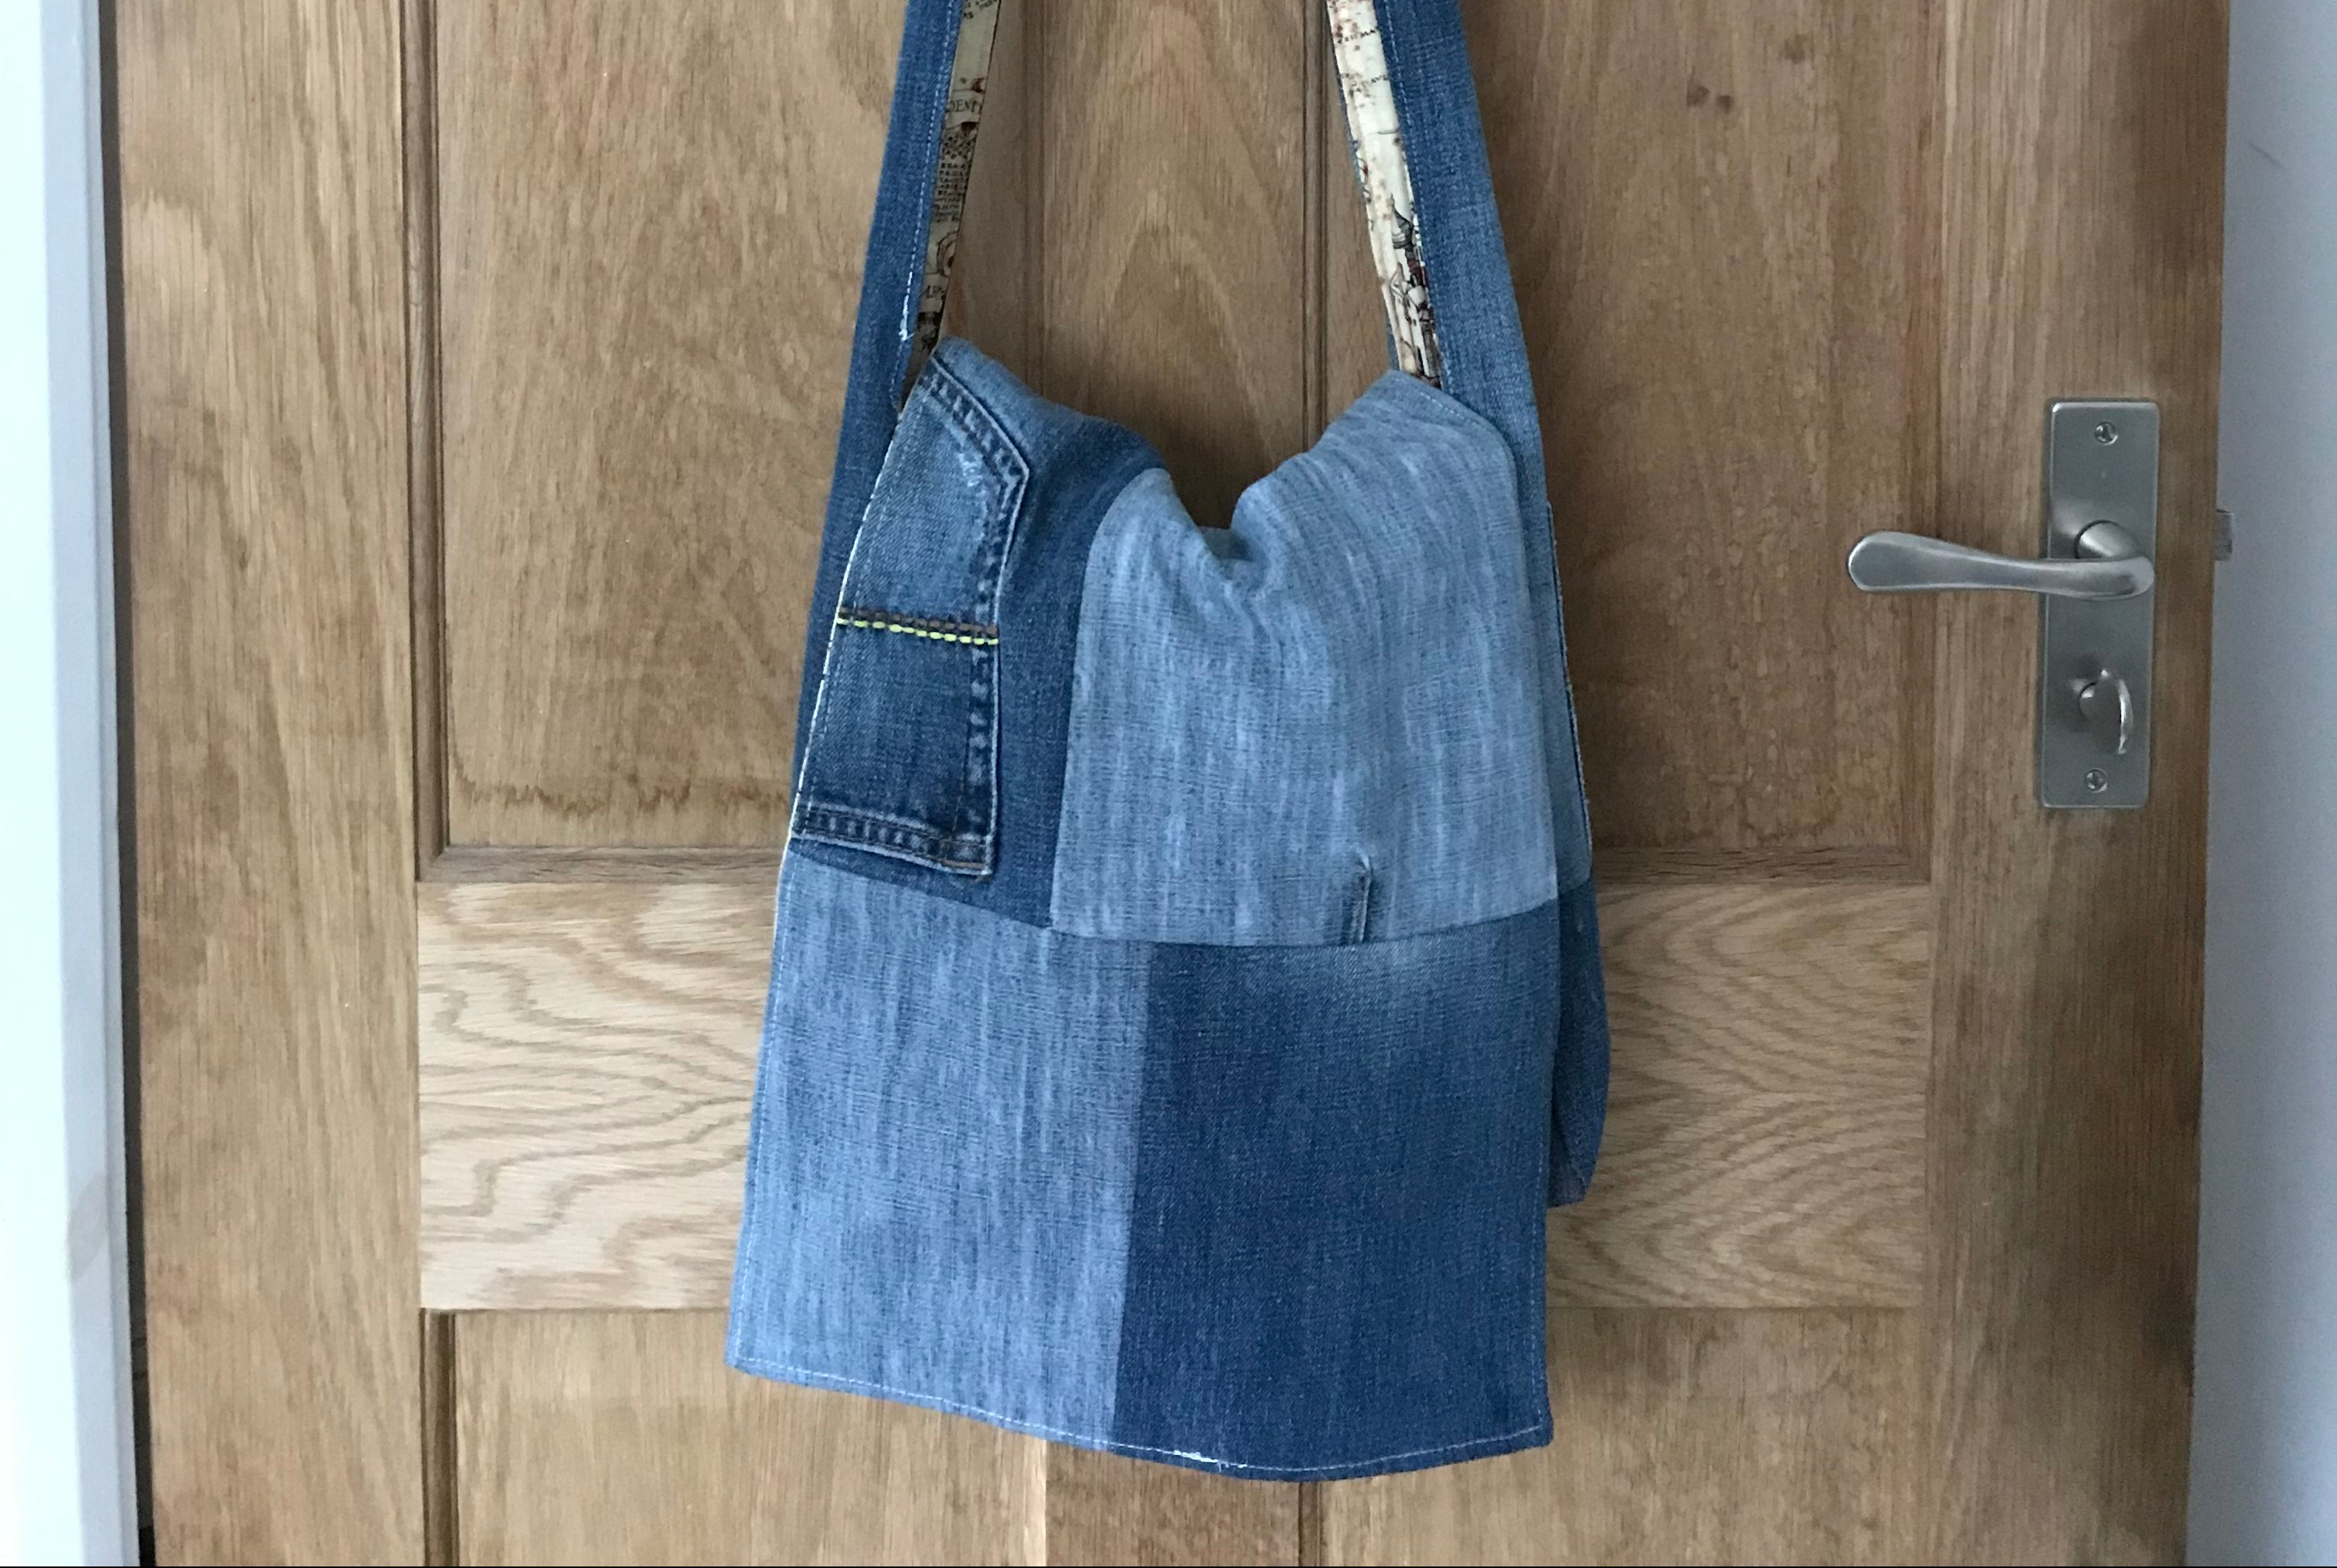 Handbag from old jeans. ~ DIY Tutorial Ideas!